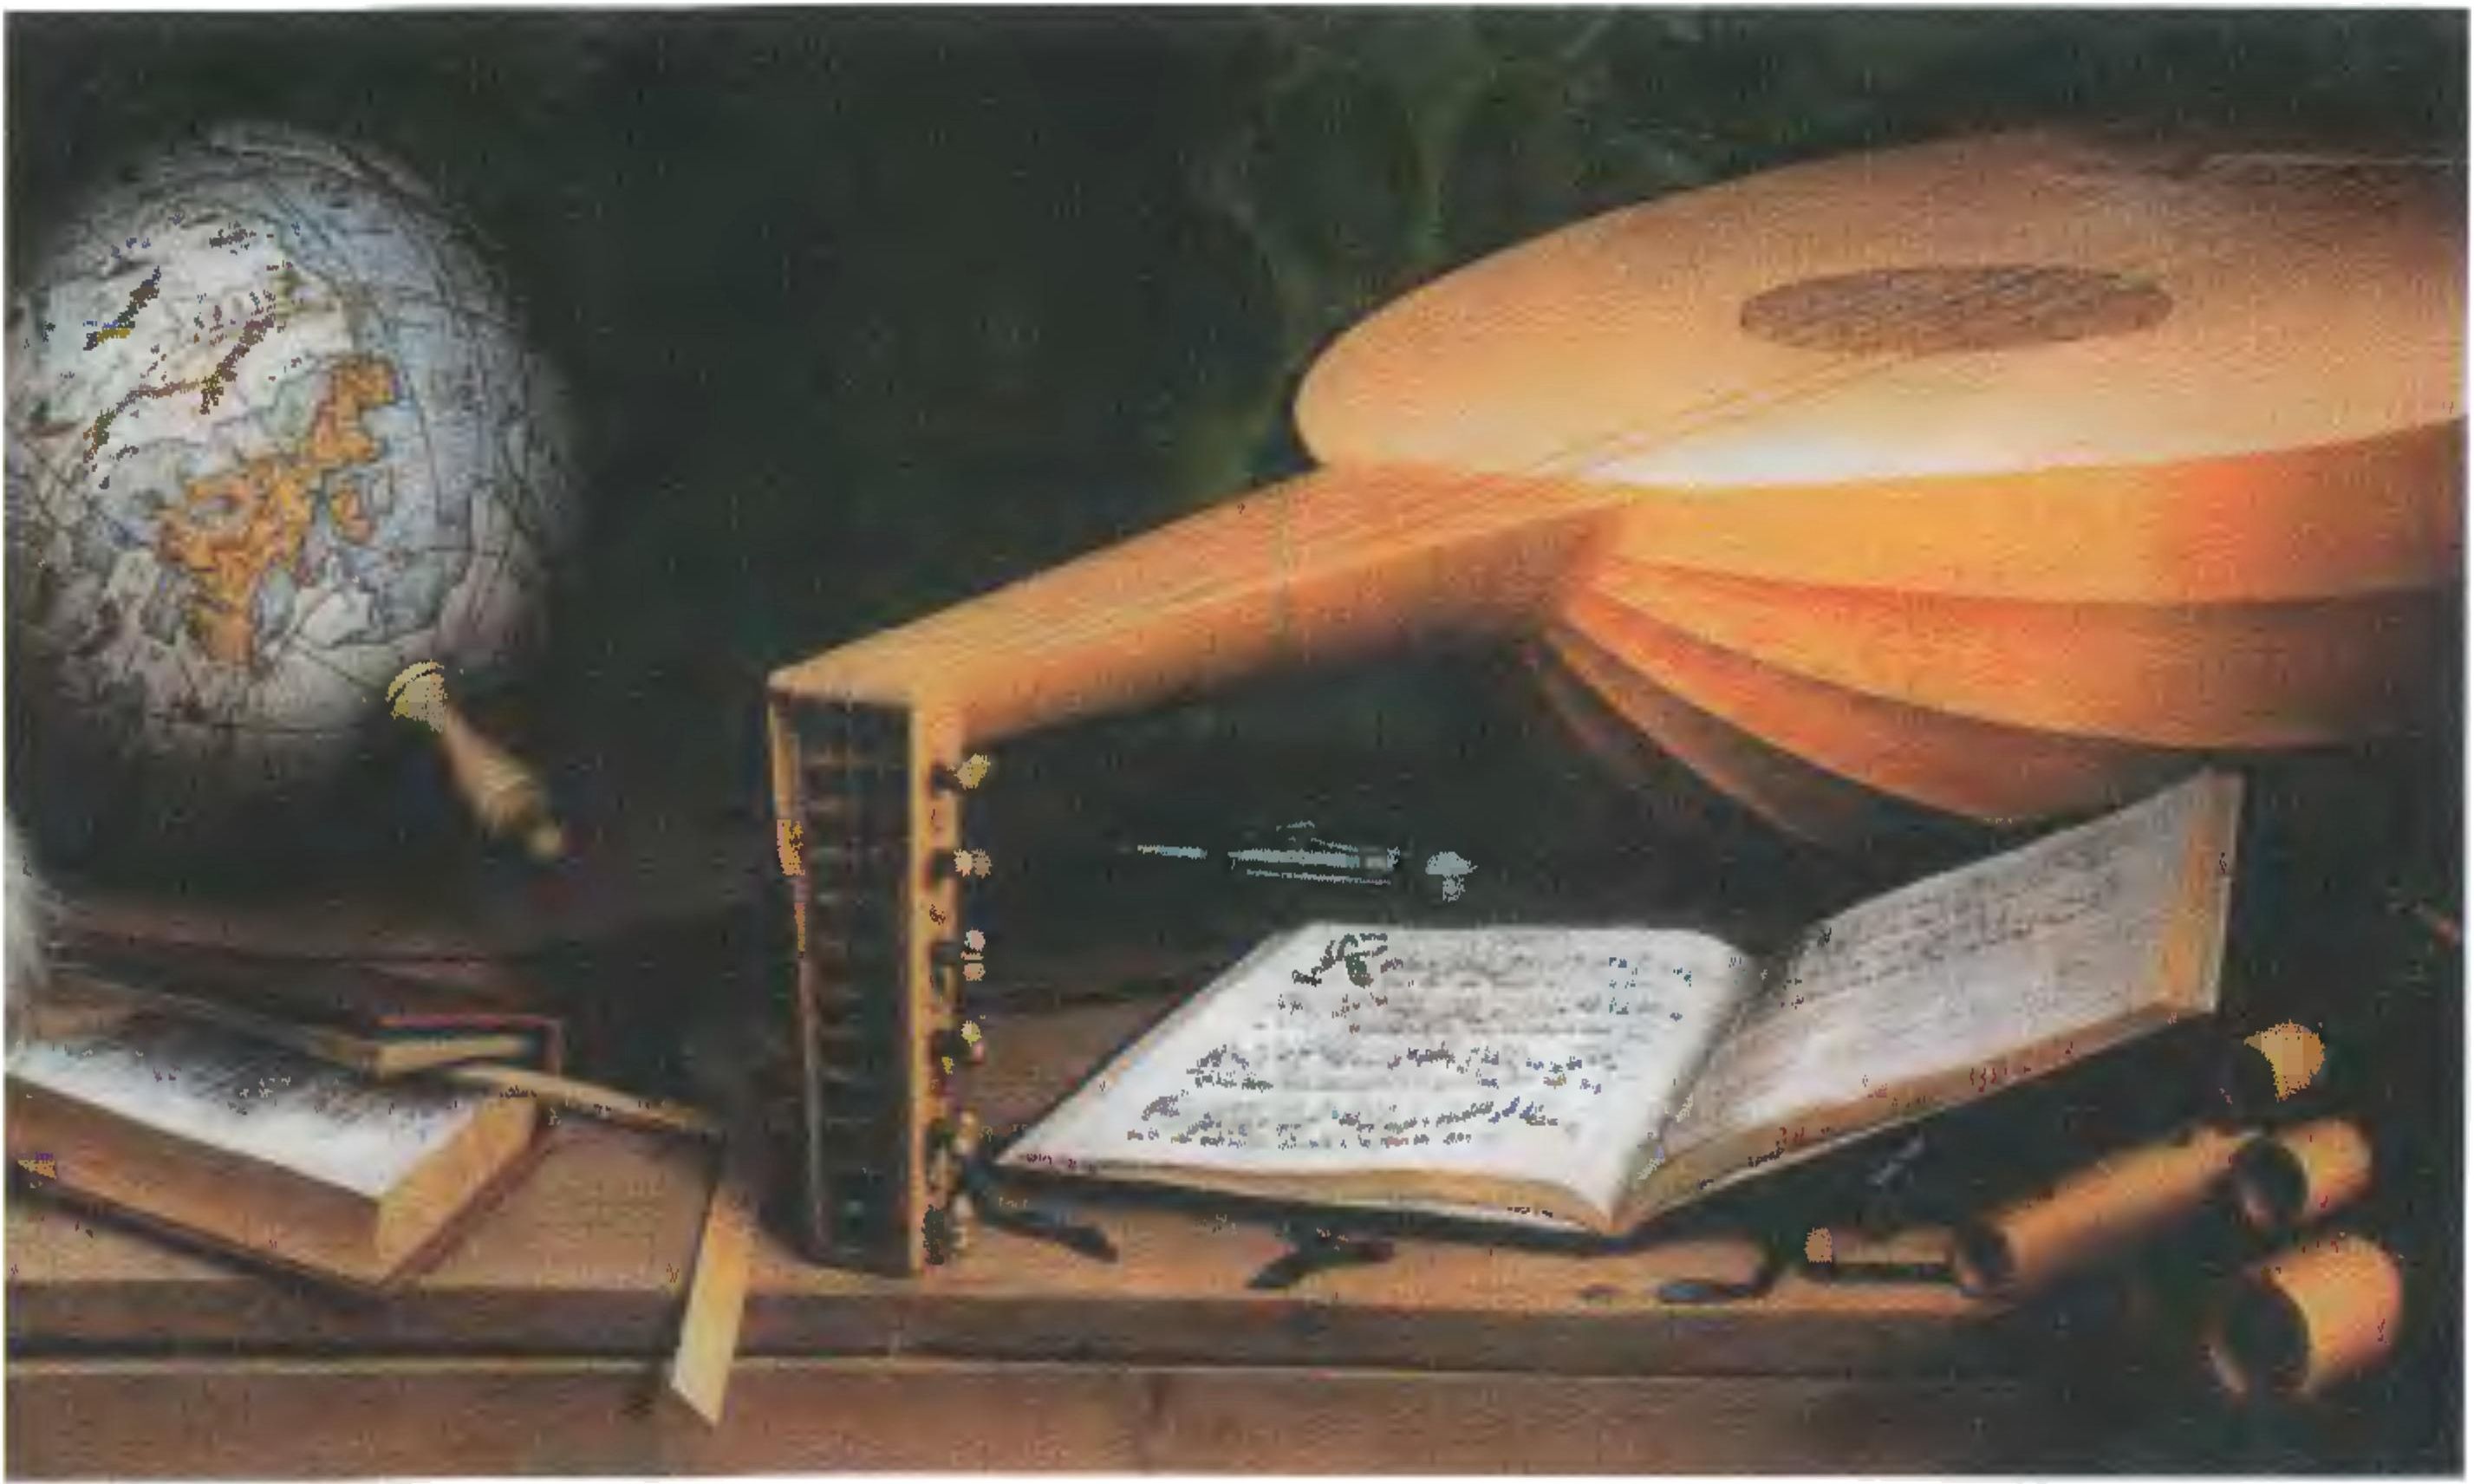 Деталь картины Г. Гольбейна «Послы». Предметы на нижней полке